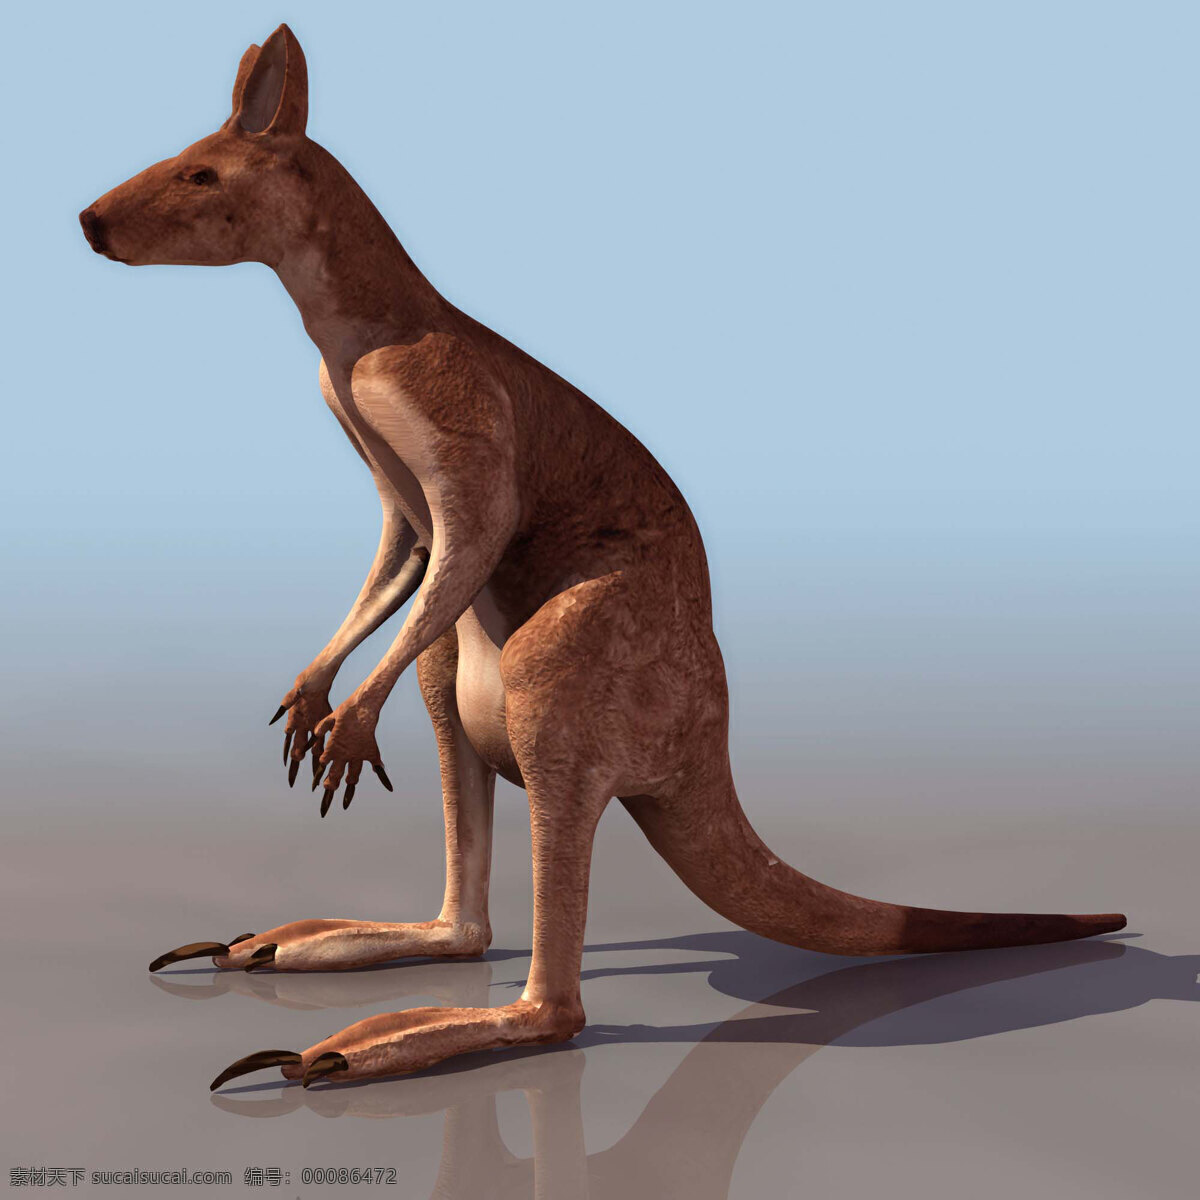 袋鼠 kangaroo 动物模型 陆生动物 3d模型素材 动植物模型